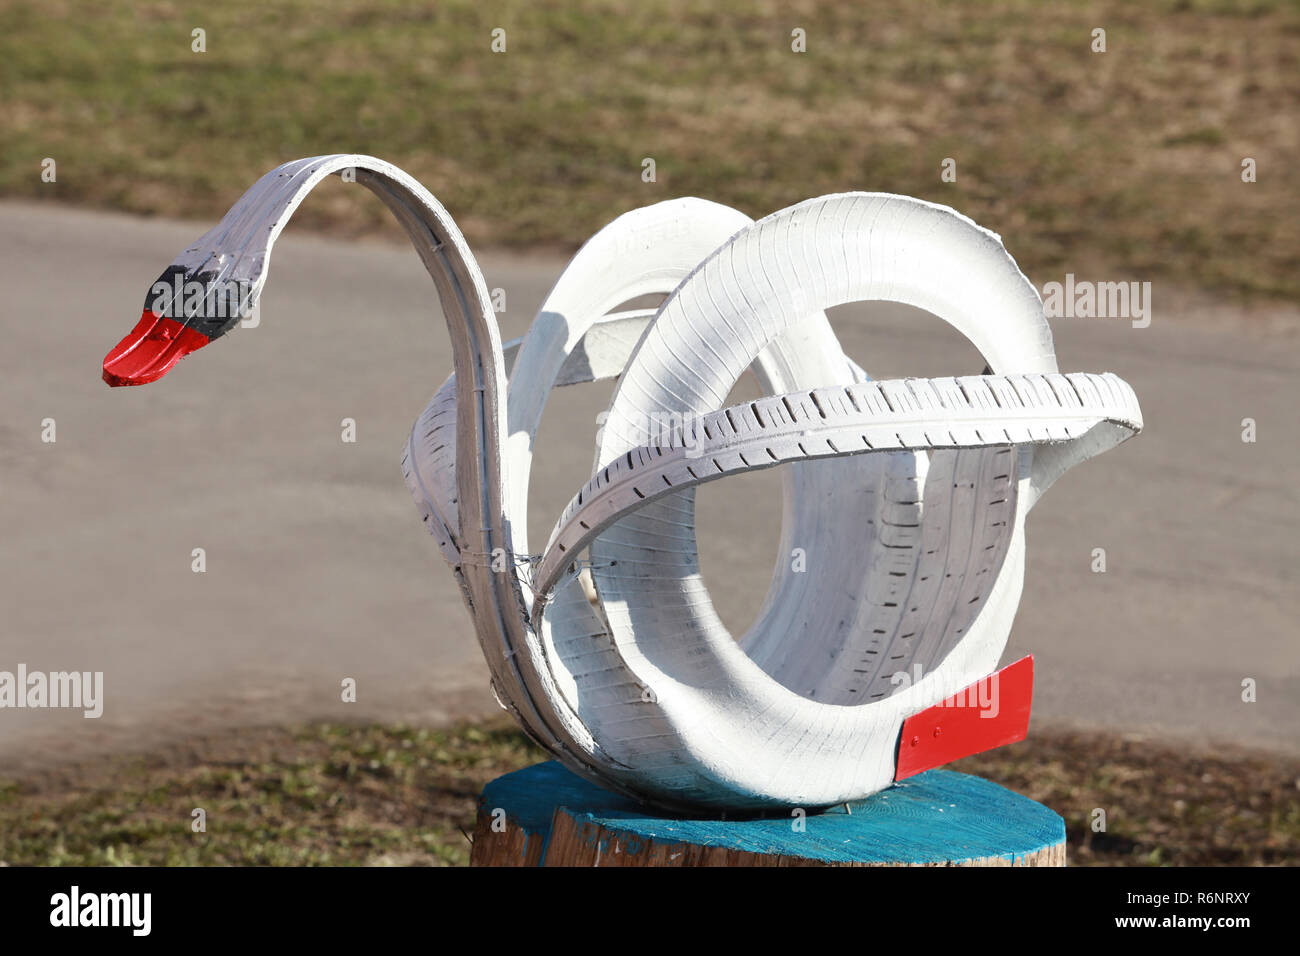 C'est une sculpture d'un vieux pneu de voiture de White Swan garden design Banque D'Images